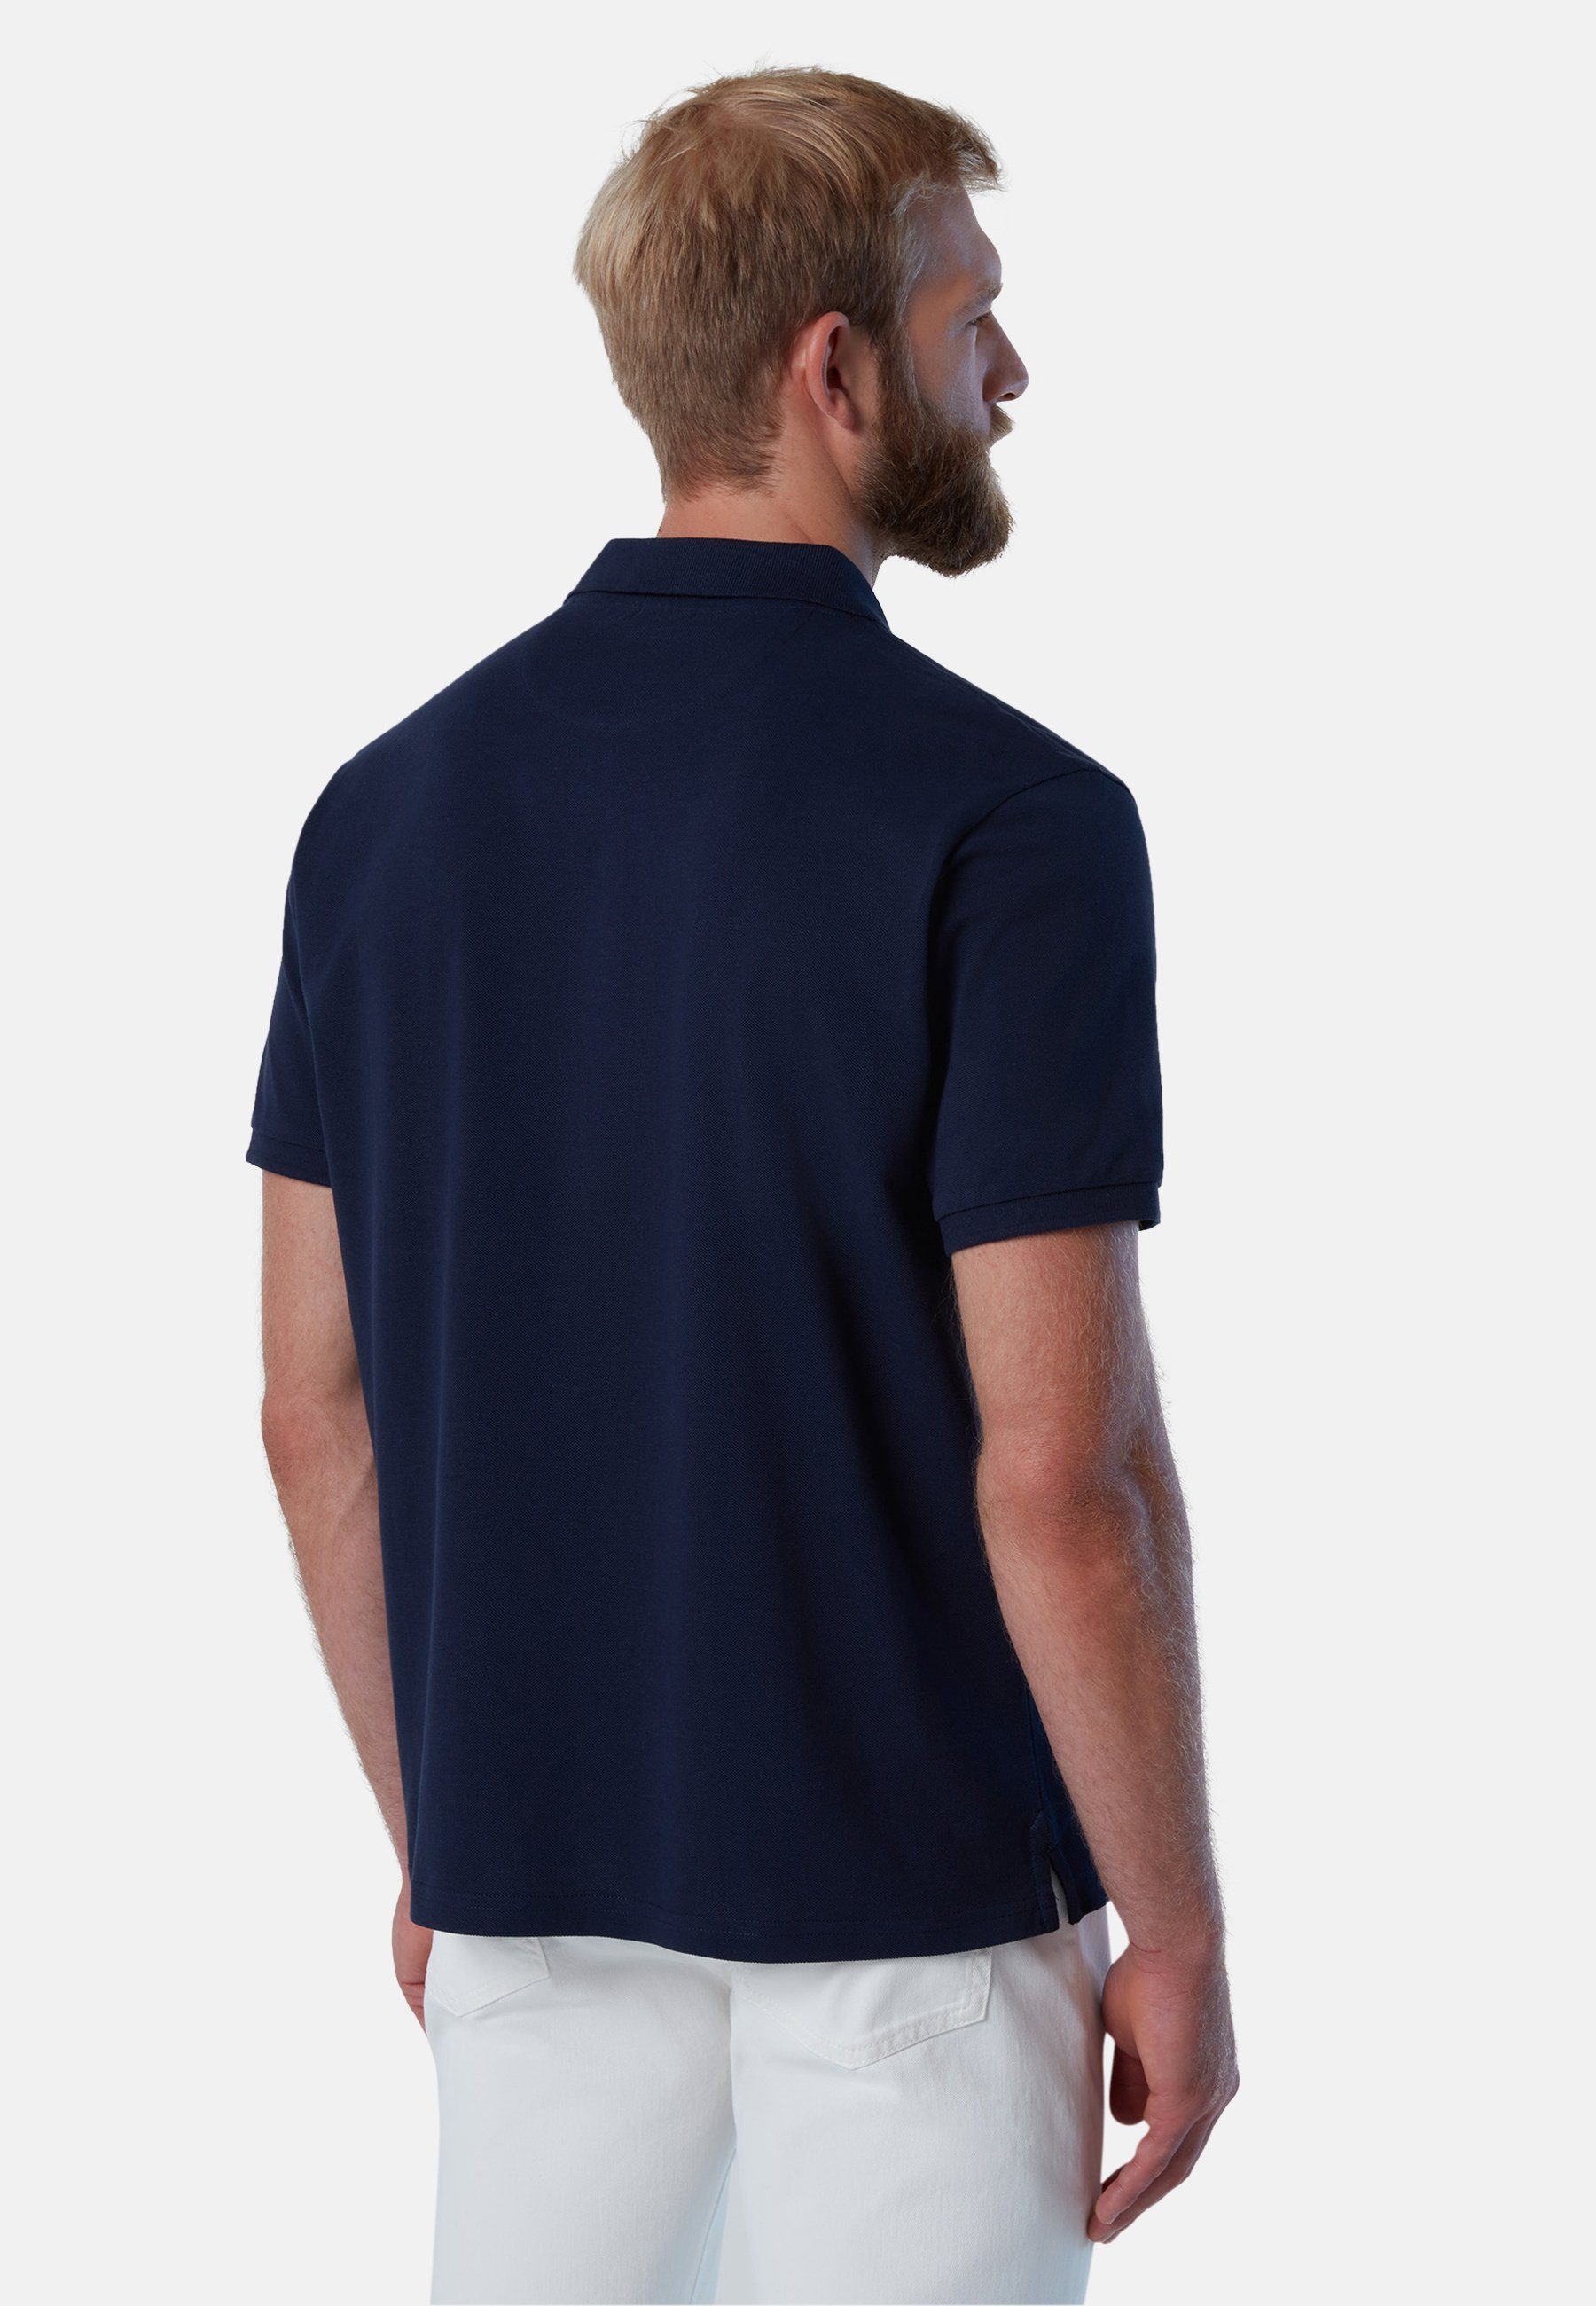 mit North BLUE Sails Poloshirt Logo-Aufnäher mit Poloshirt klassischem Design